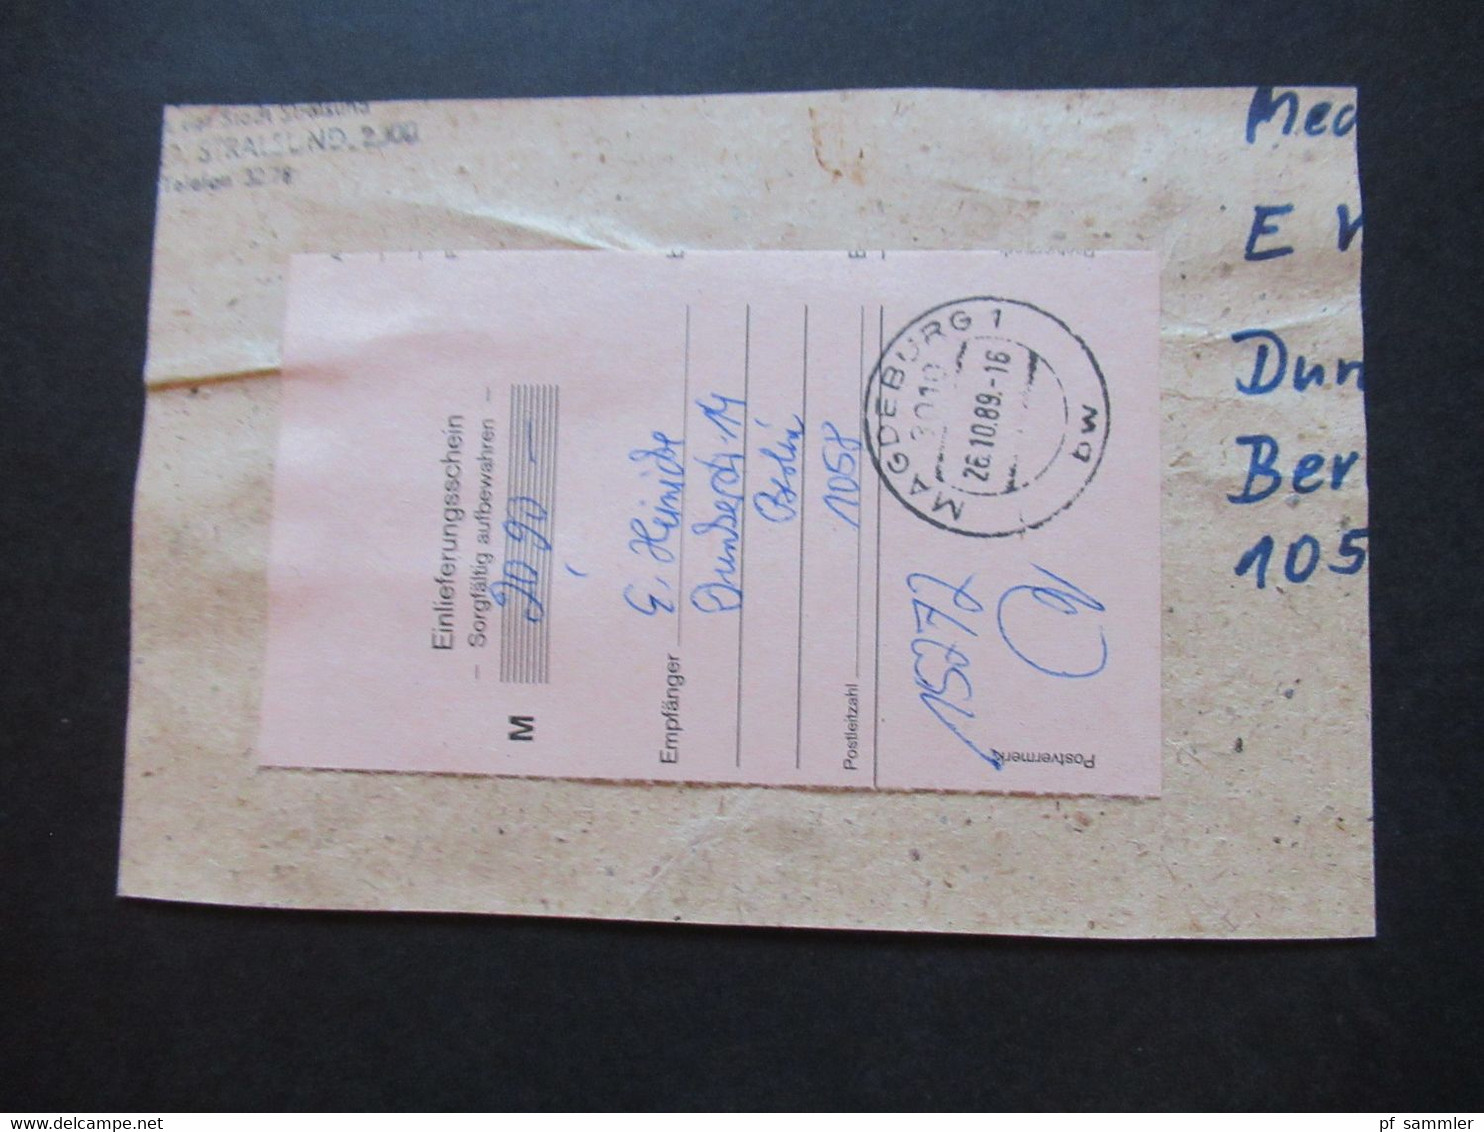 DDR 1989 Einschreibe Gebührenzettel Sb Postämter 1057 Berlin Nachnahme Wirtschaftspaket Mit Einlieferungsschein - Cartas & Documentos